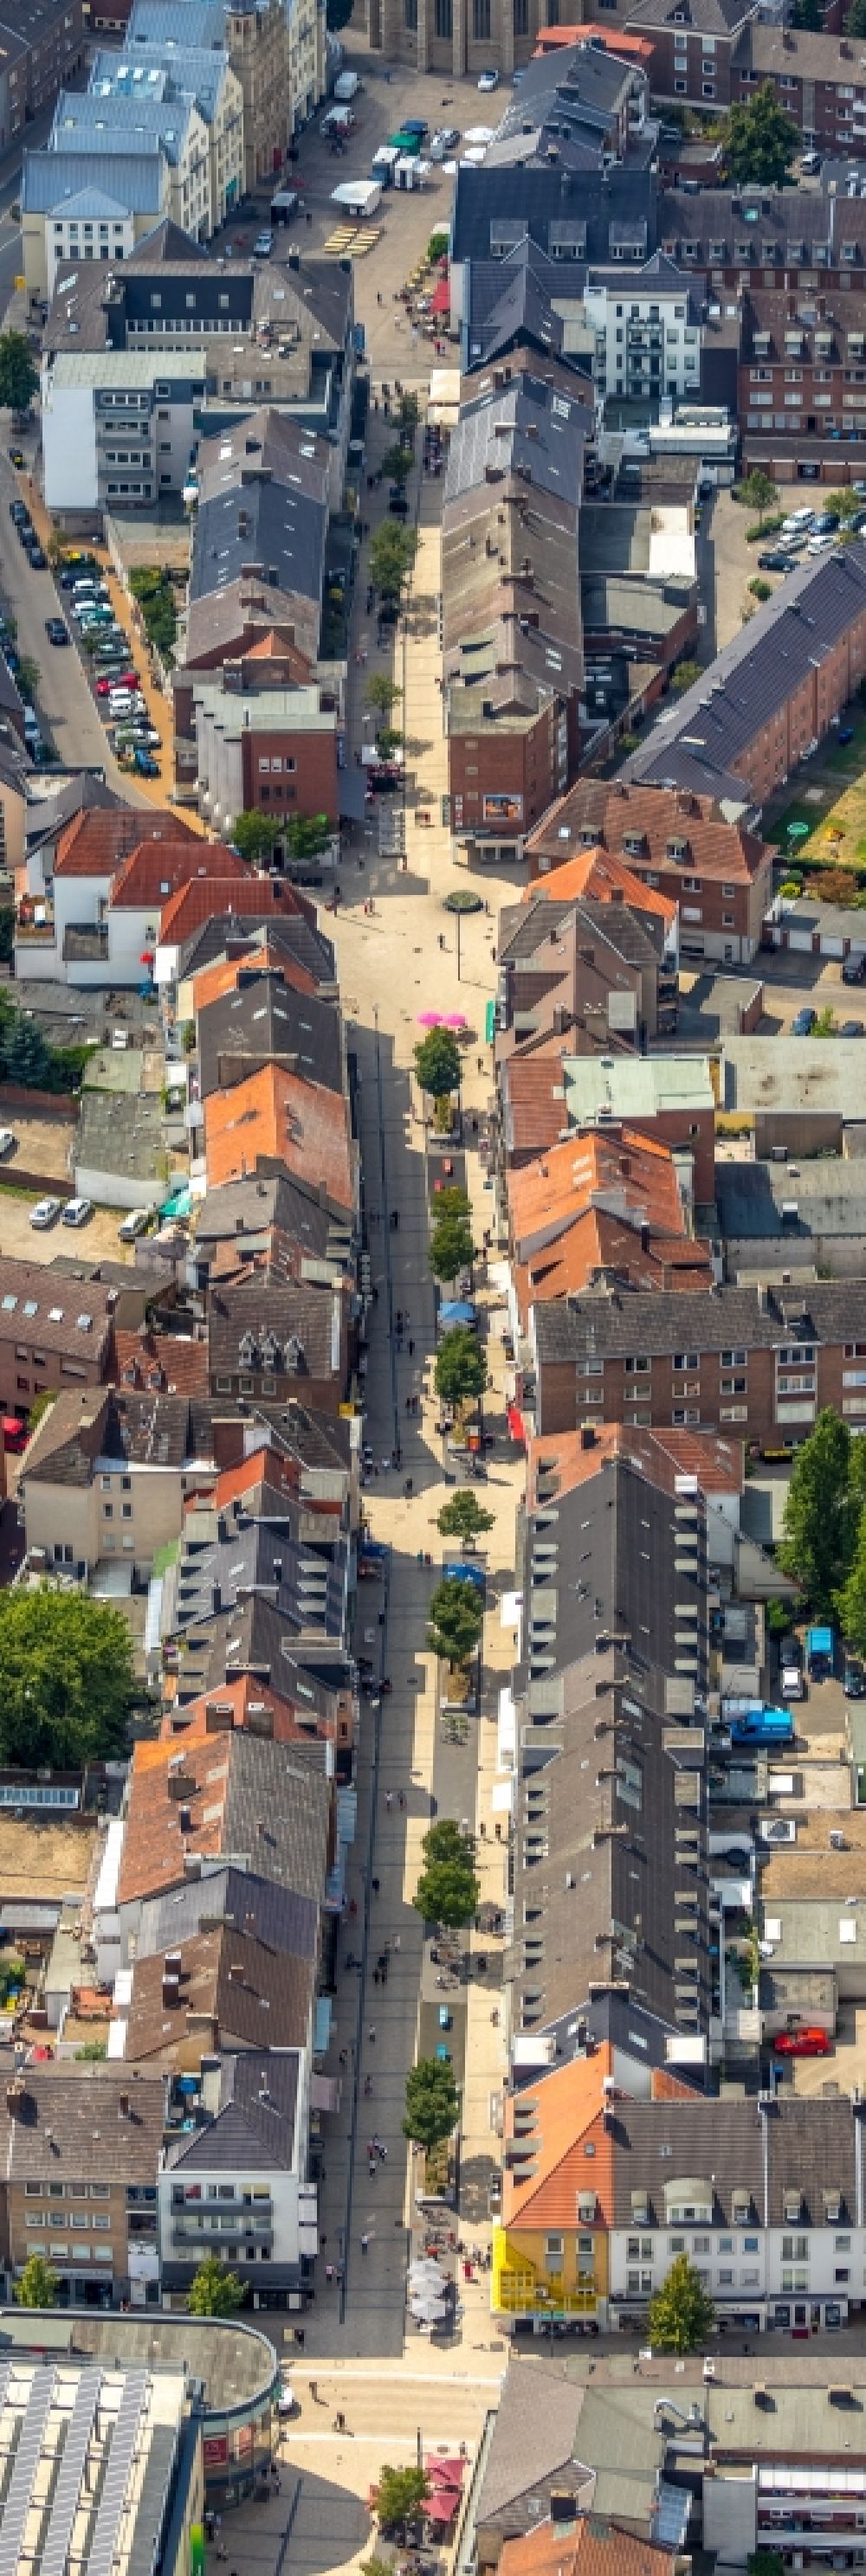 Luftbild Wesel - Straßenführung der bekannten Flaniermeile und Einkaufsstraße Hohe Straße im Ortsteil Blumenkamp in Wesel im Bundesland Nordrhein-Westfalen, Deutschland